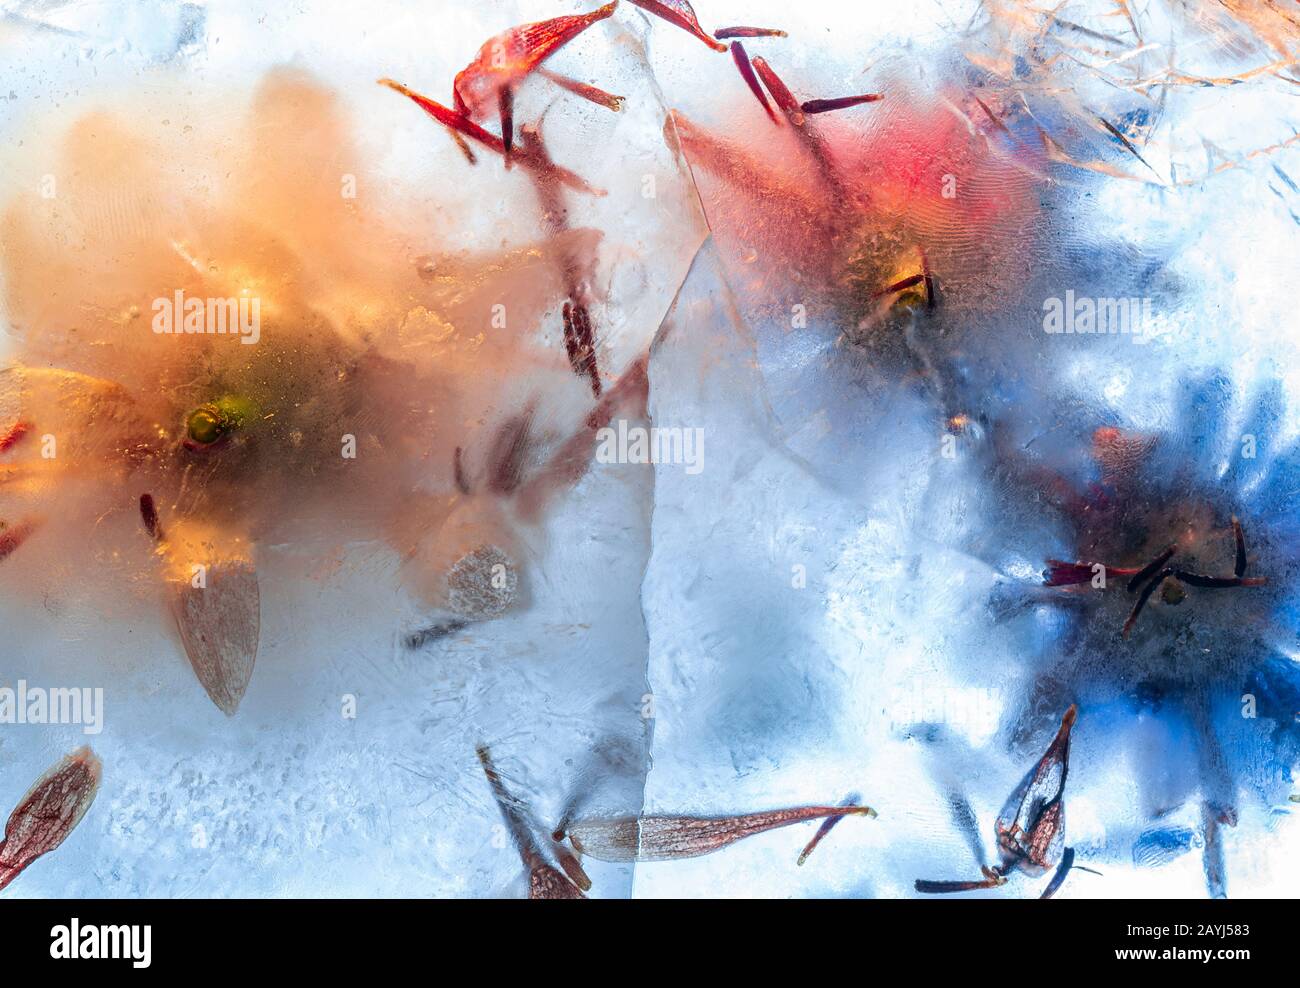 Gefrorene Blumen in dickem Eisblock mit gerissener Oberfläche - kreativer abstrakter Hintergrund Stockfoto